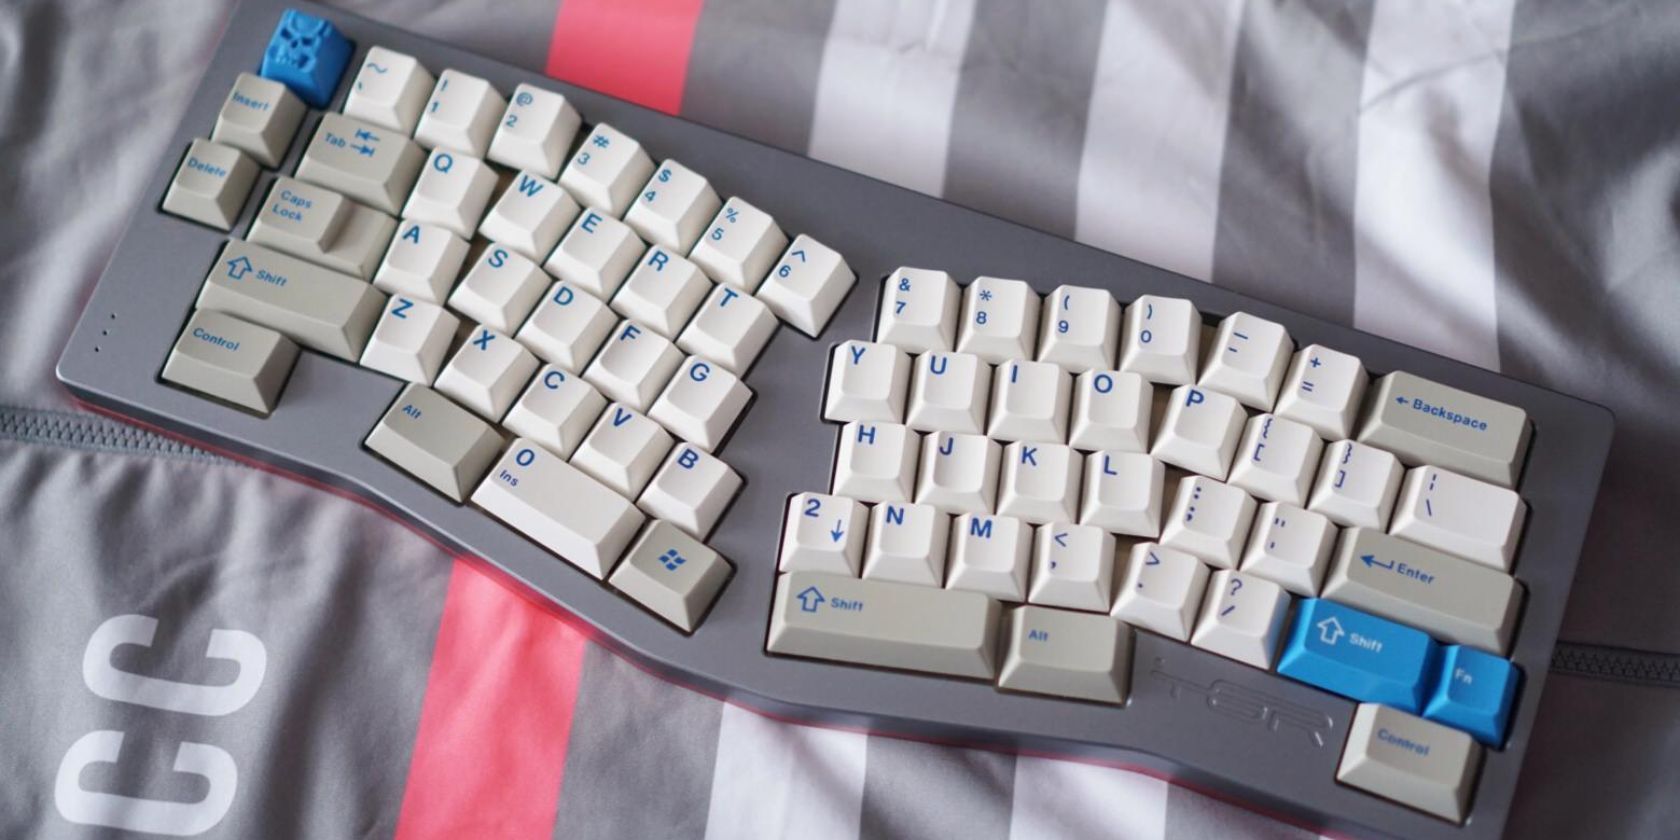 Desain prototipe keyboard TGR-Alice duduk di atas hoodie